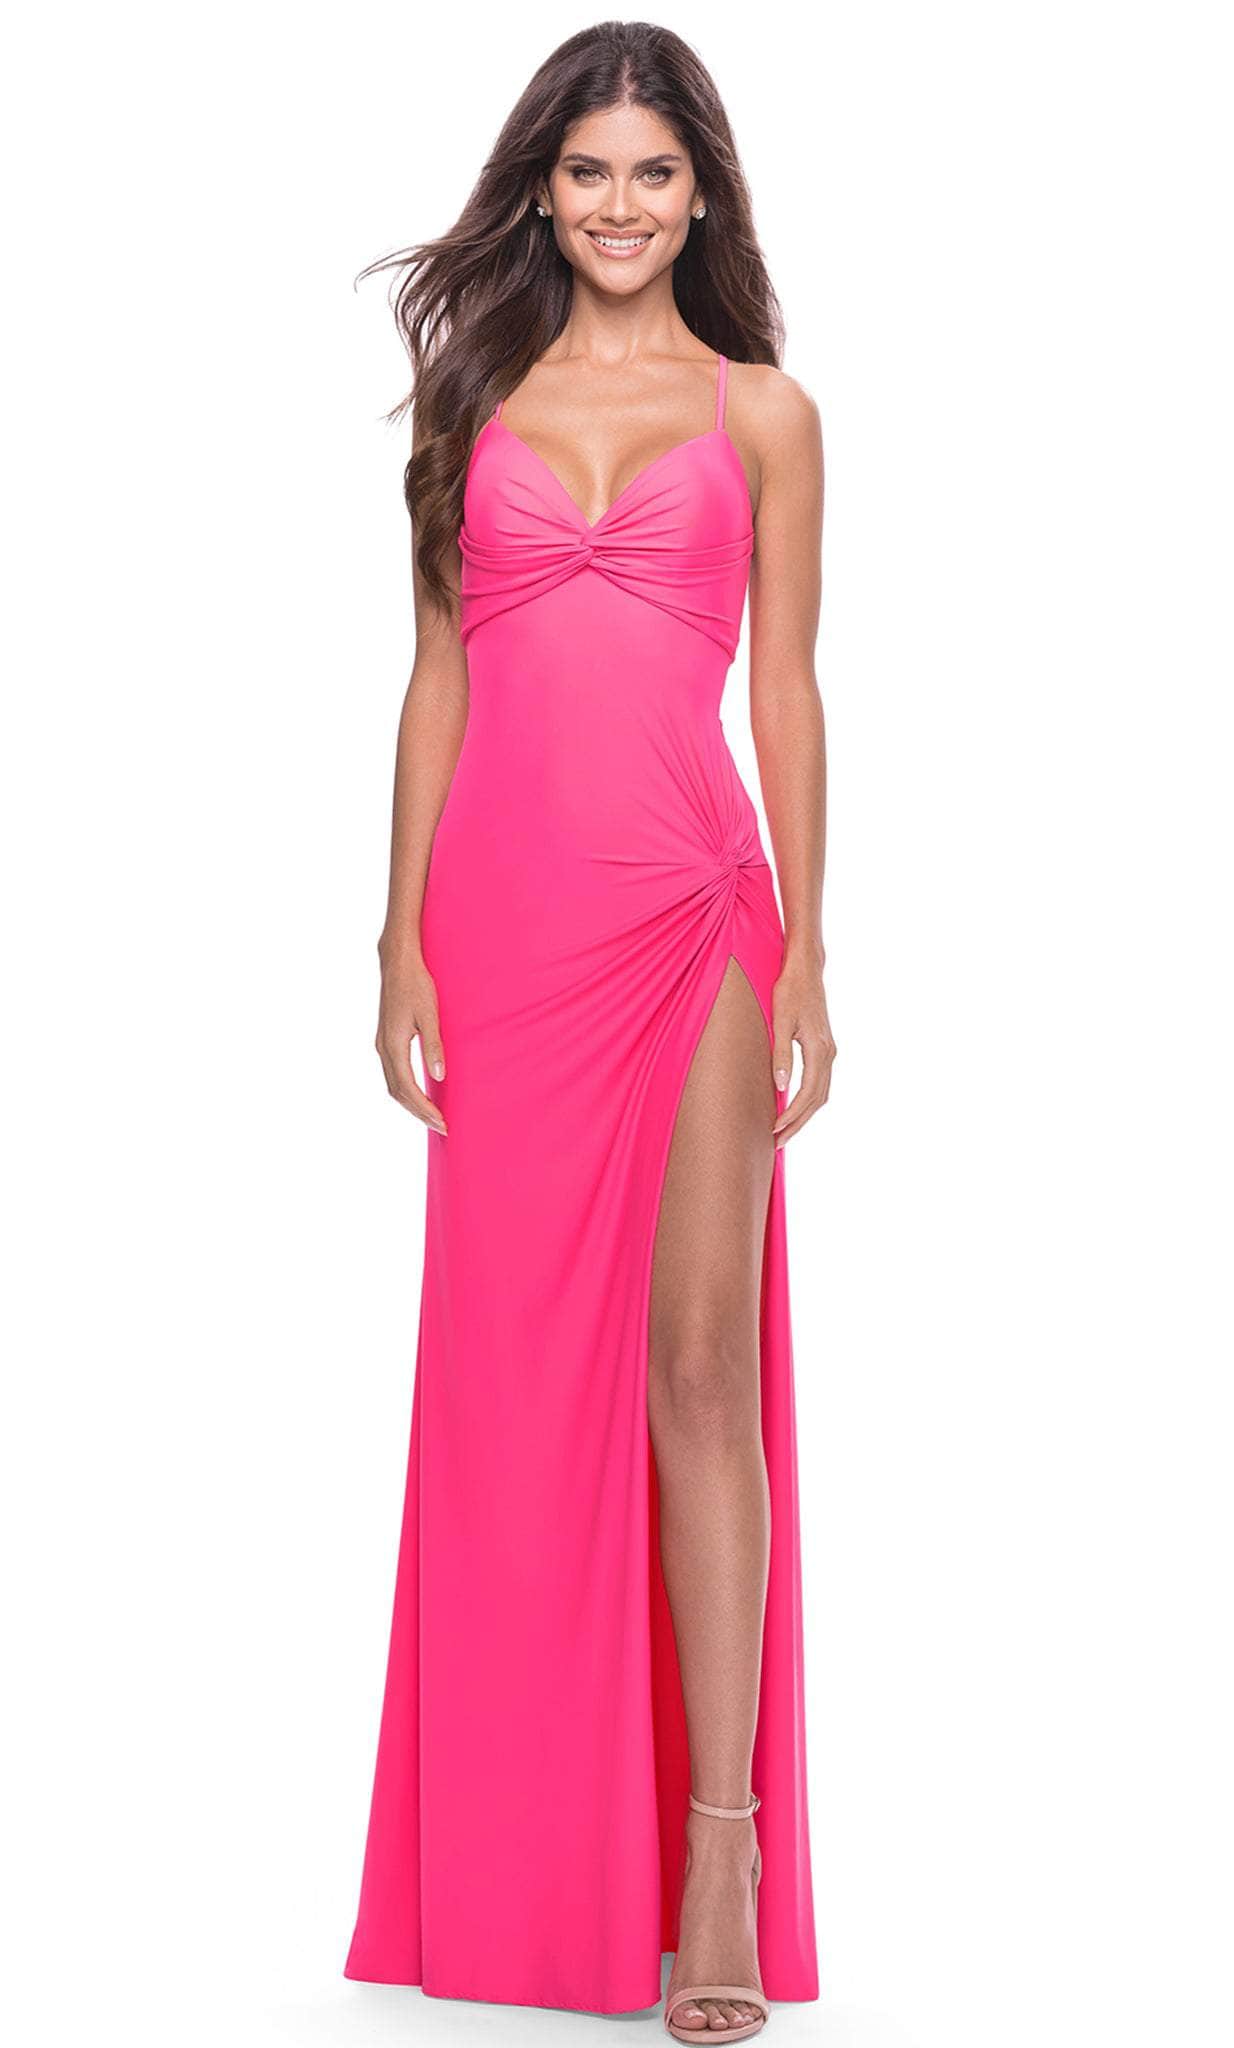 La Femme 31446 - Twisted Knot V-Neck Long Prom Dress
